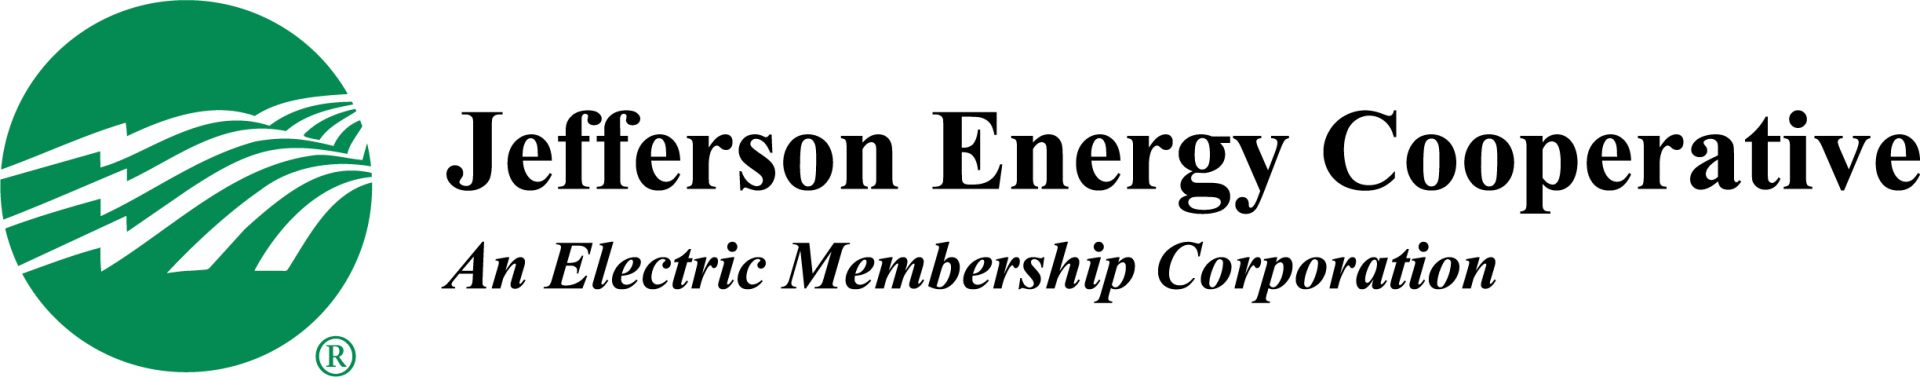 Jefferson Energy Cooperative                      